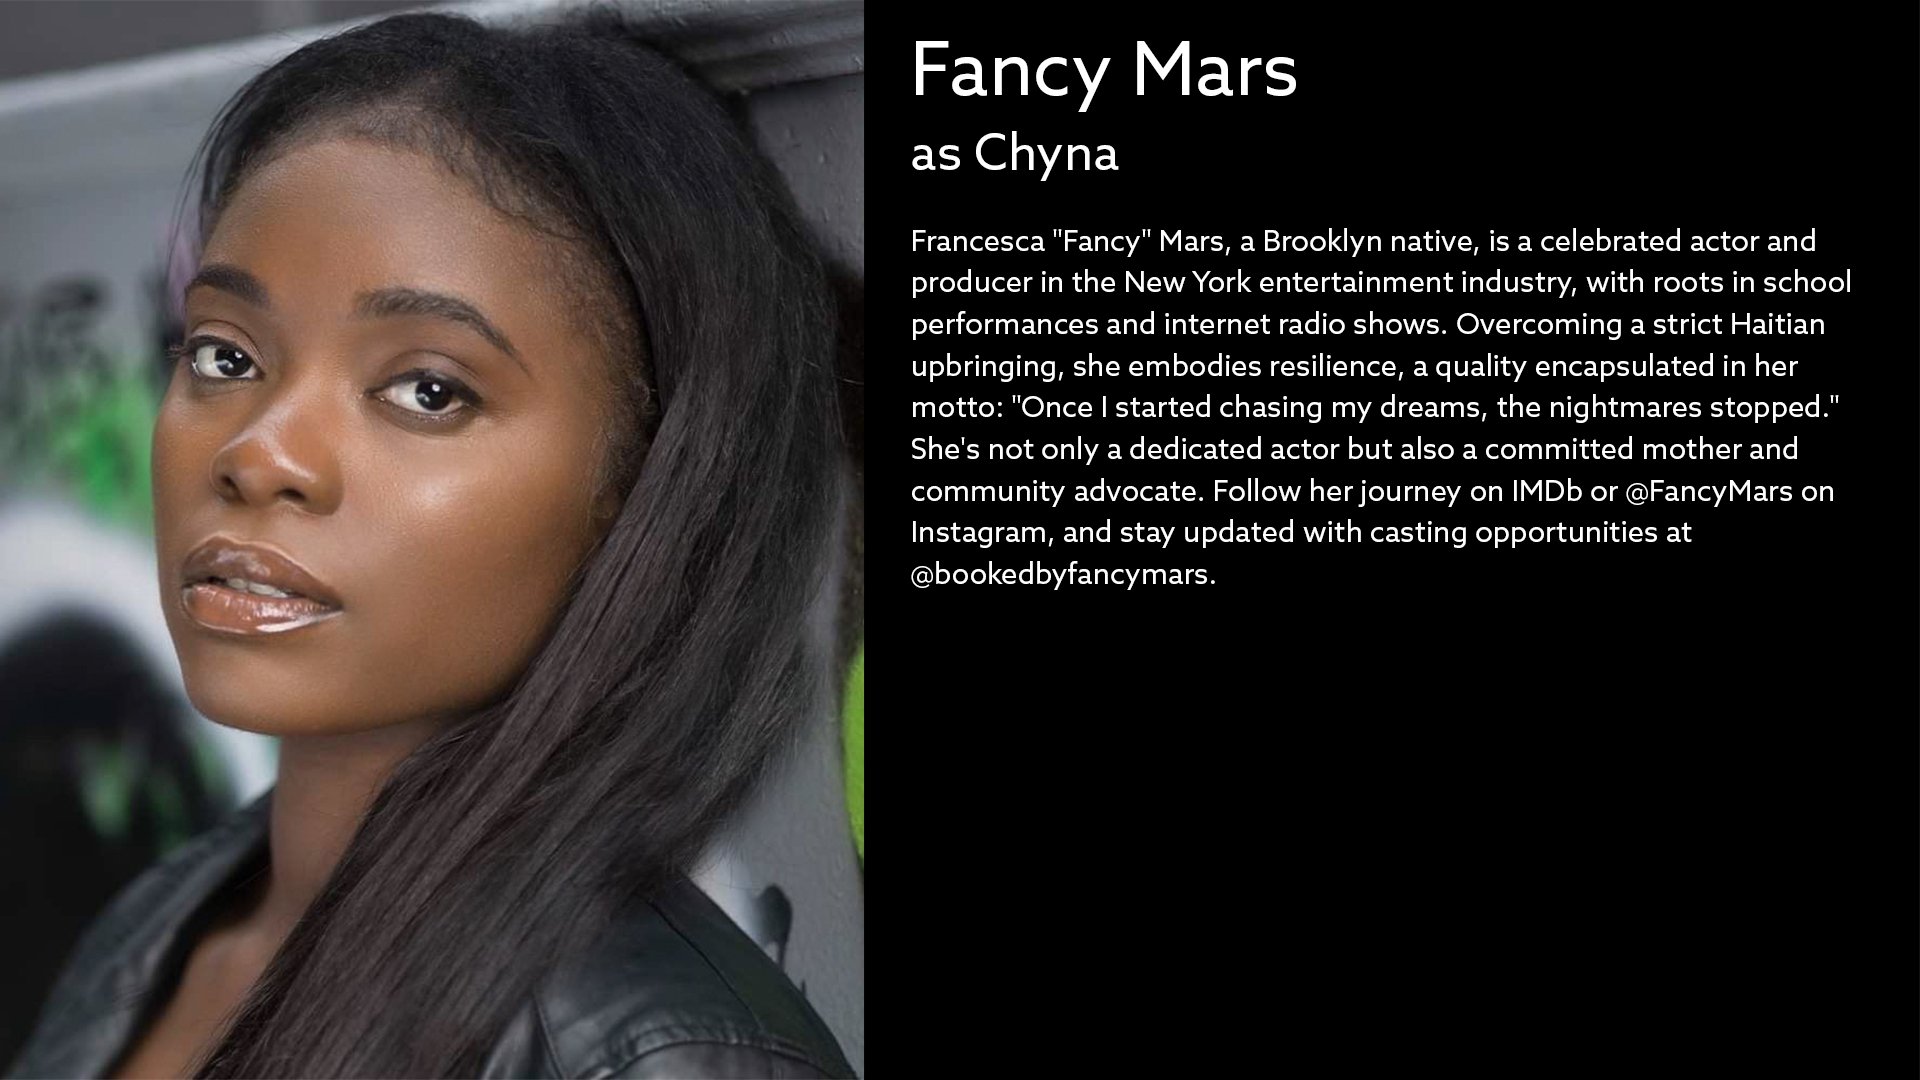 Fancy-Mars-as-Chyna.jpg